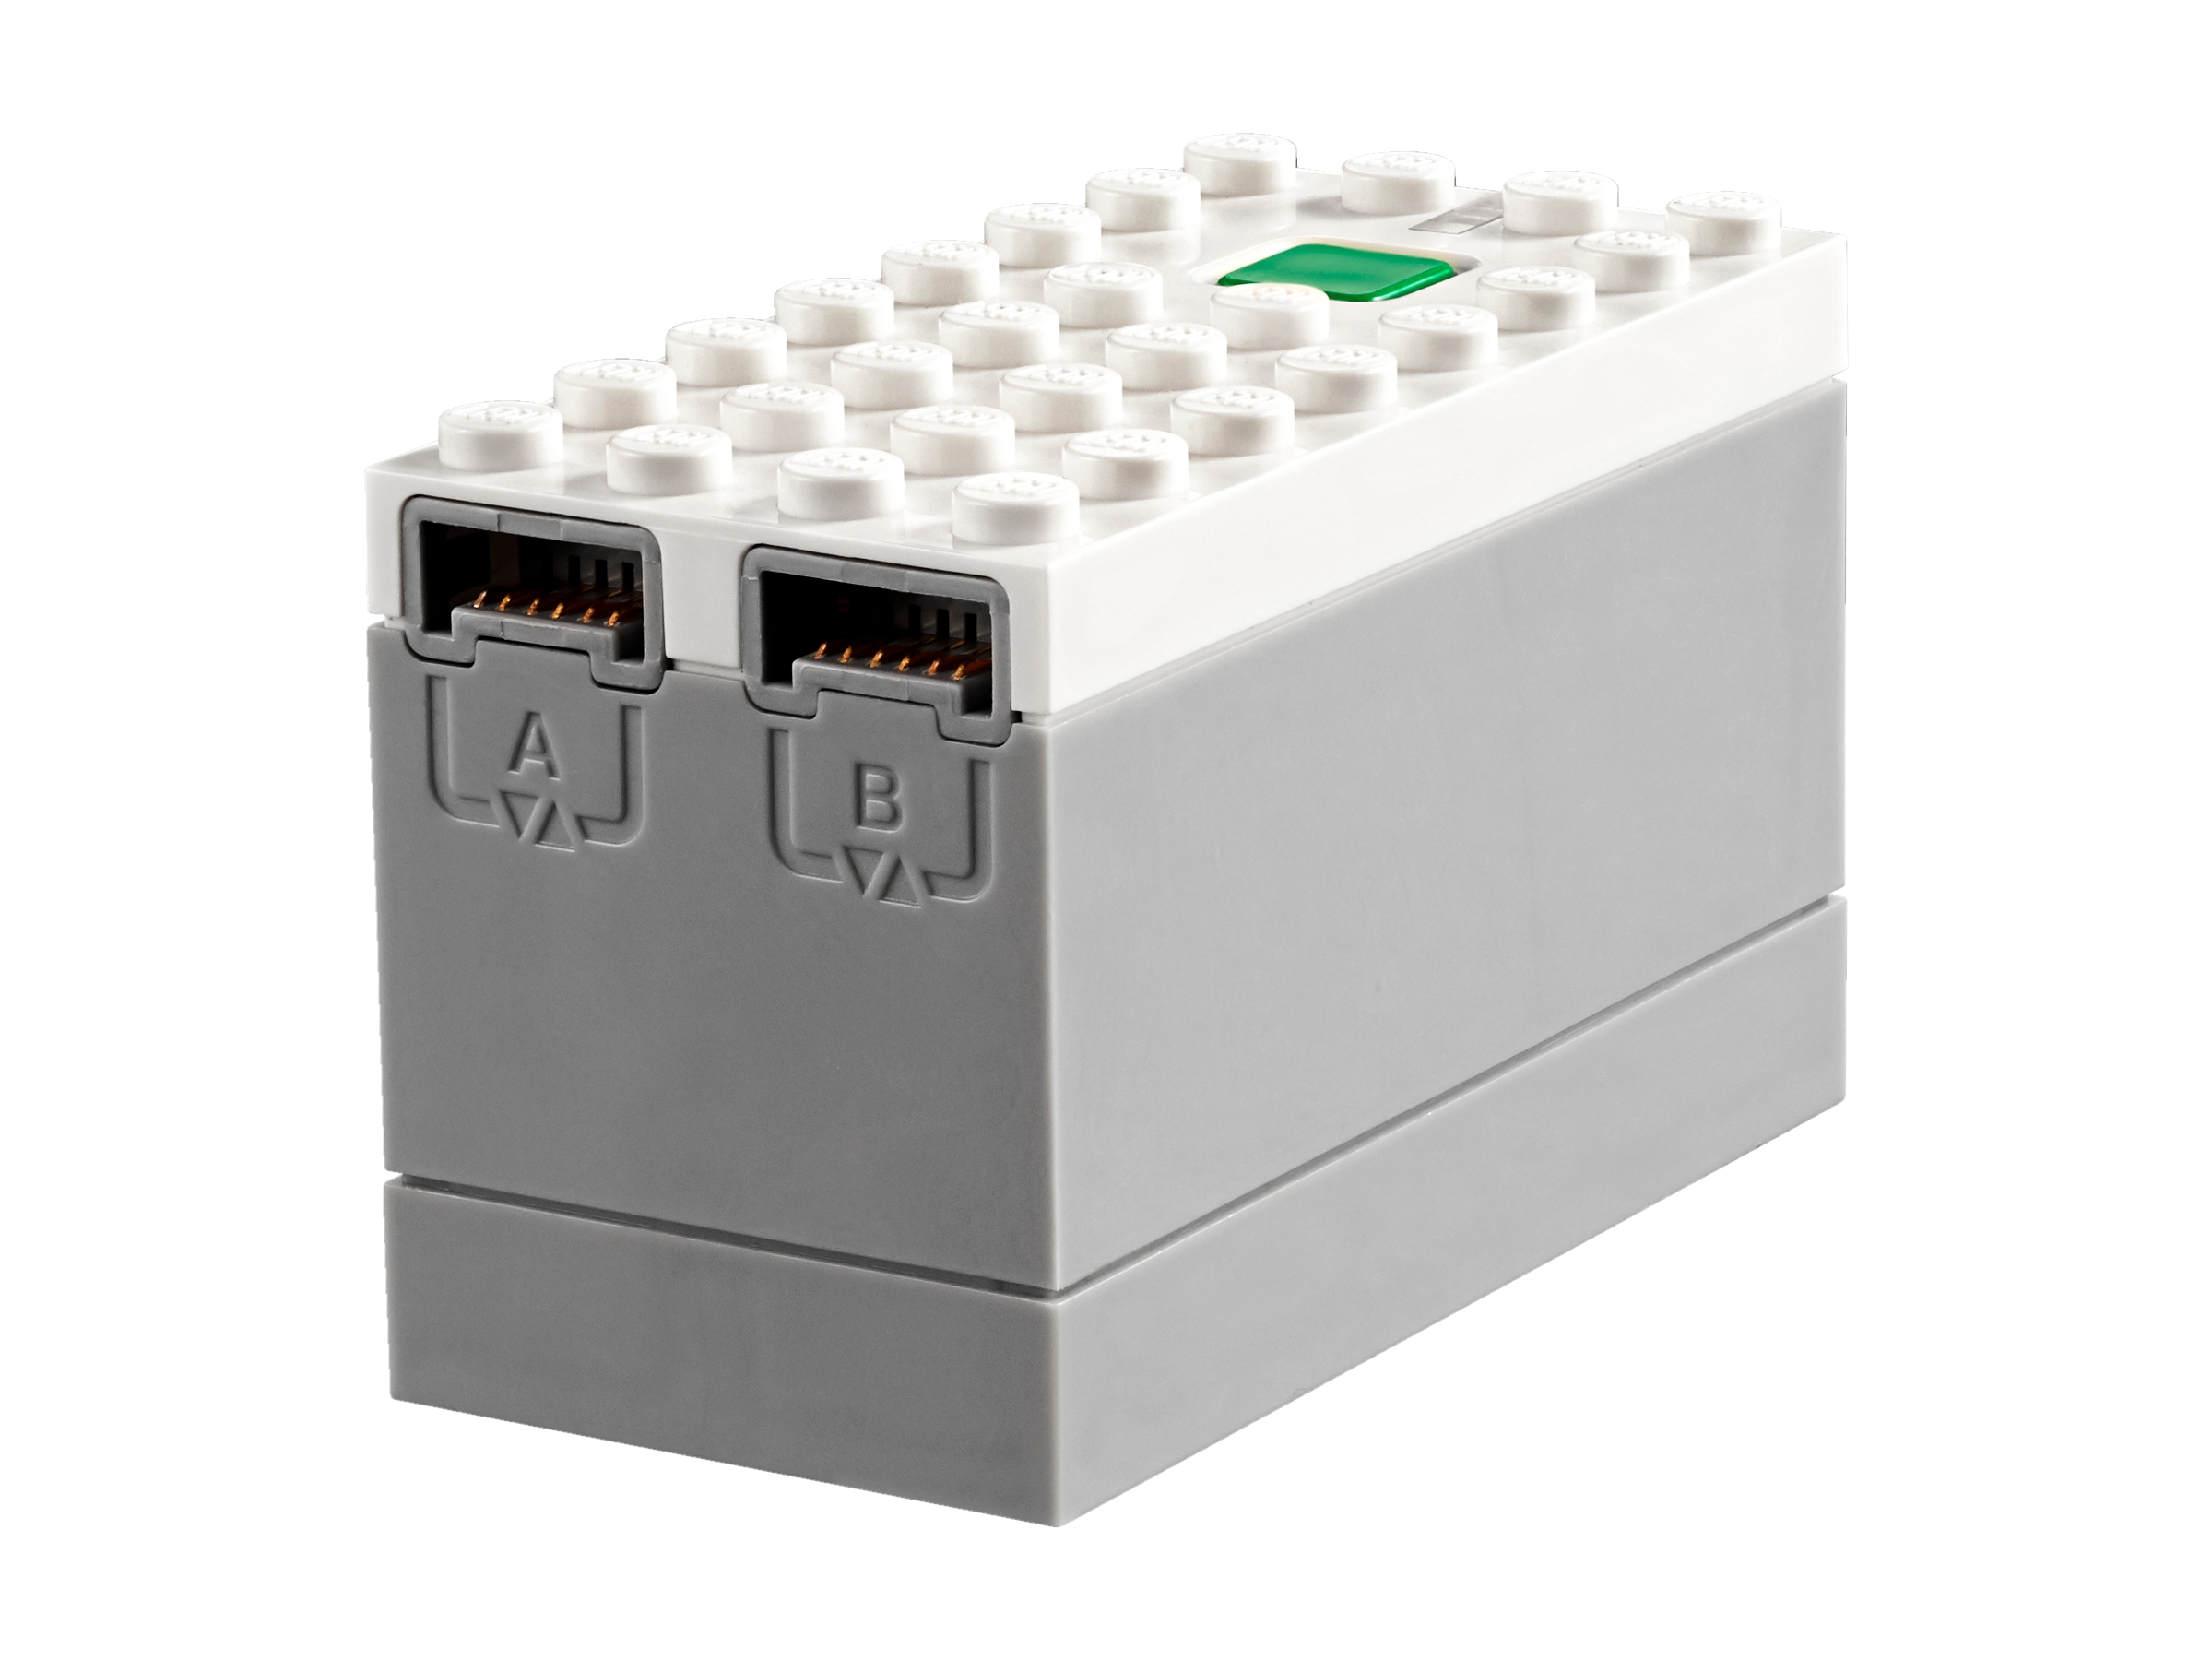 ハブ 88009 | Powered UP |レゴ®ストア公式オンラインショップJPで購入